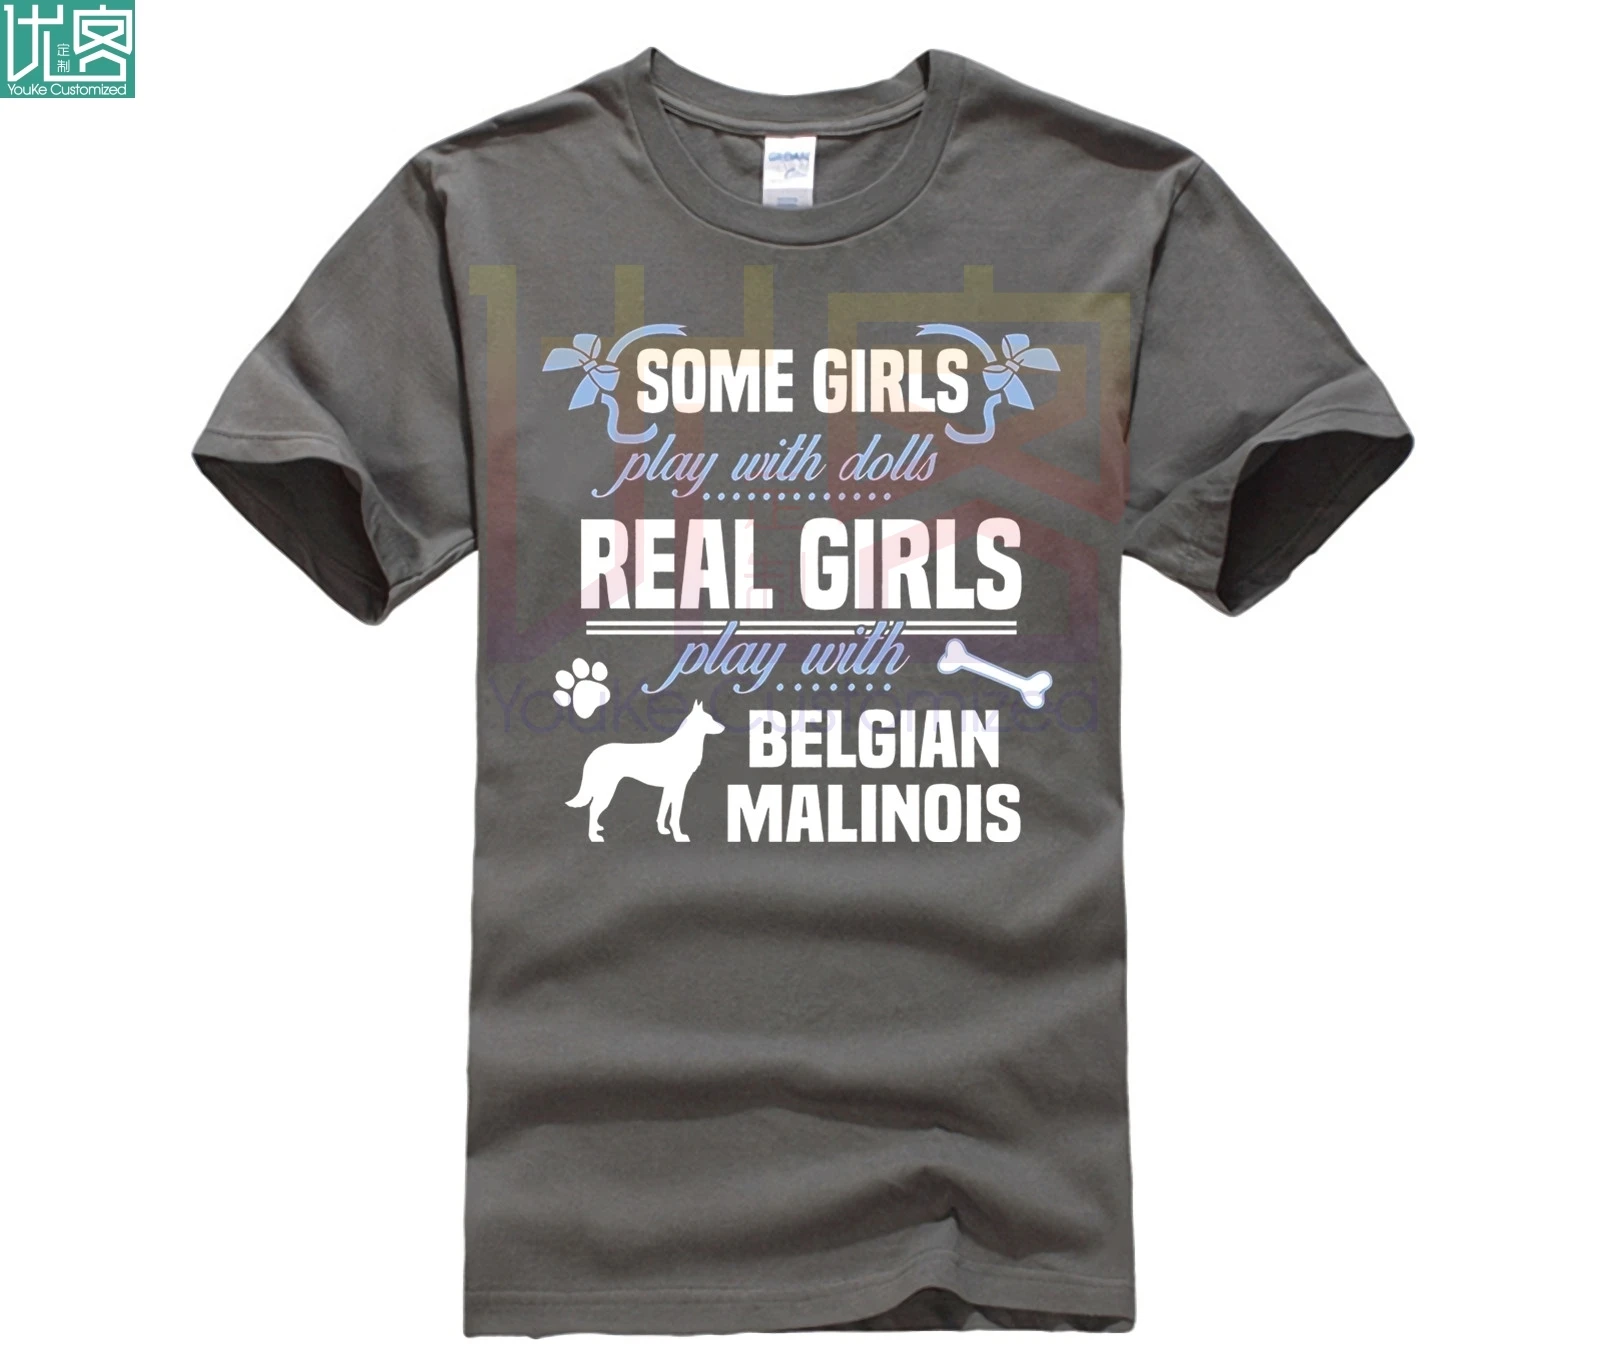 Brugerdefinerede trykt bomuld O-neck T-shirt Belgiske Malinois T-shirt Nogle drenge lege med dukker Real 2